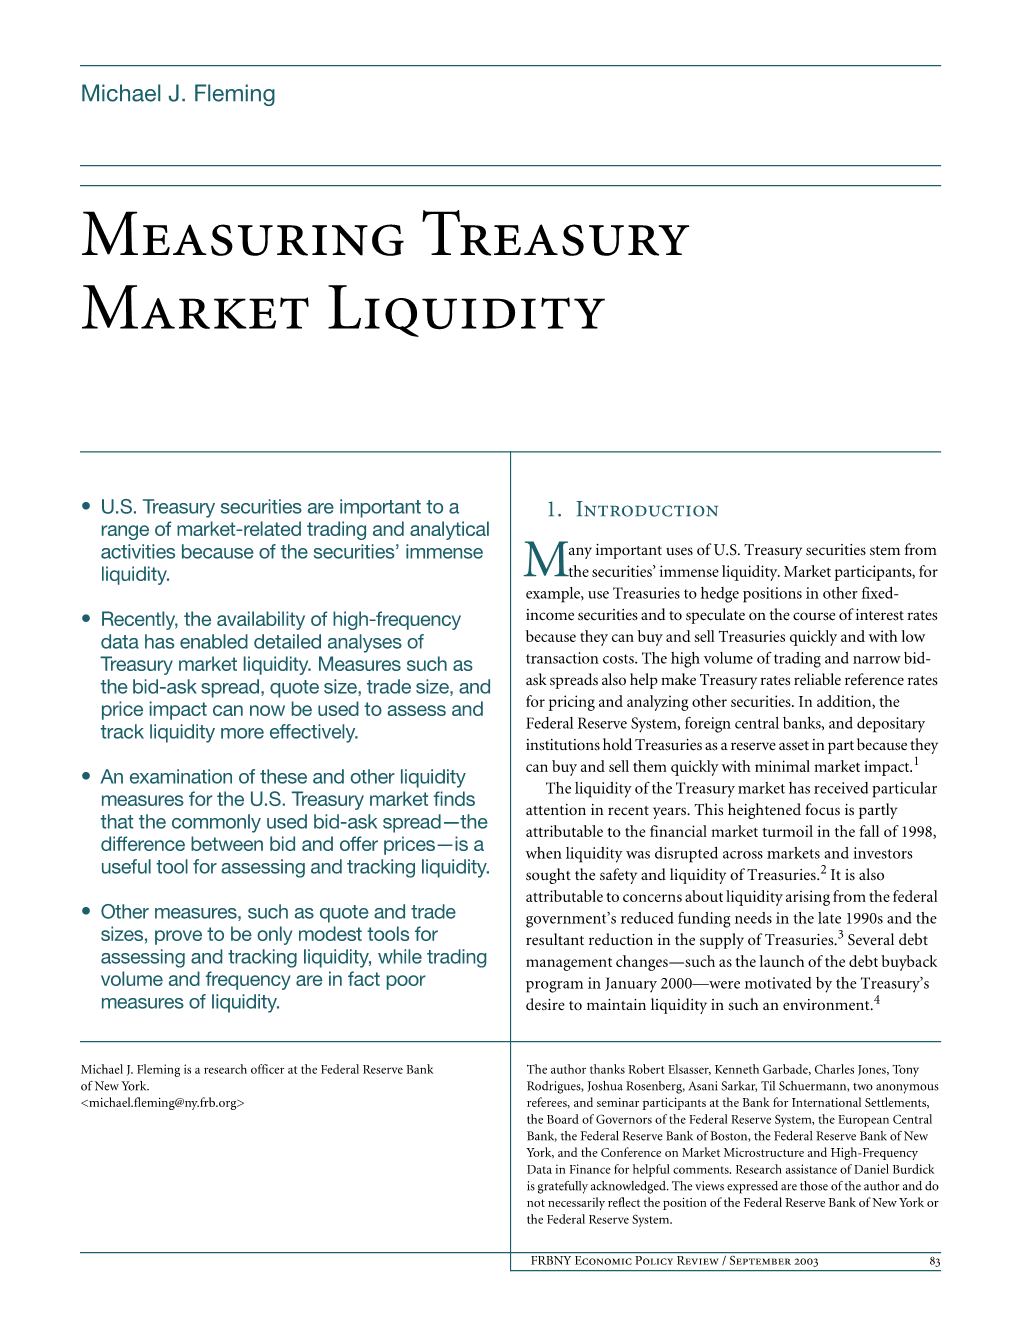 Measuring Treasury Market Liquidity